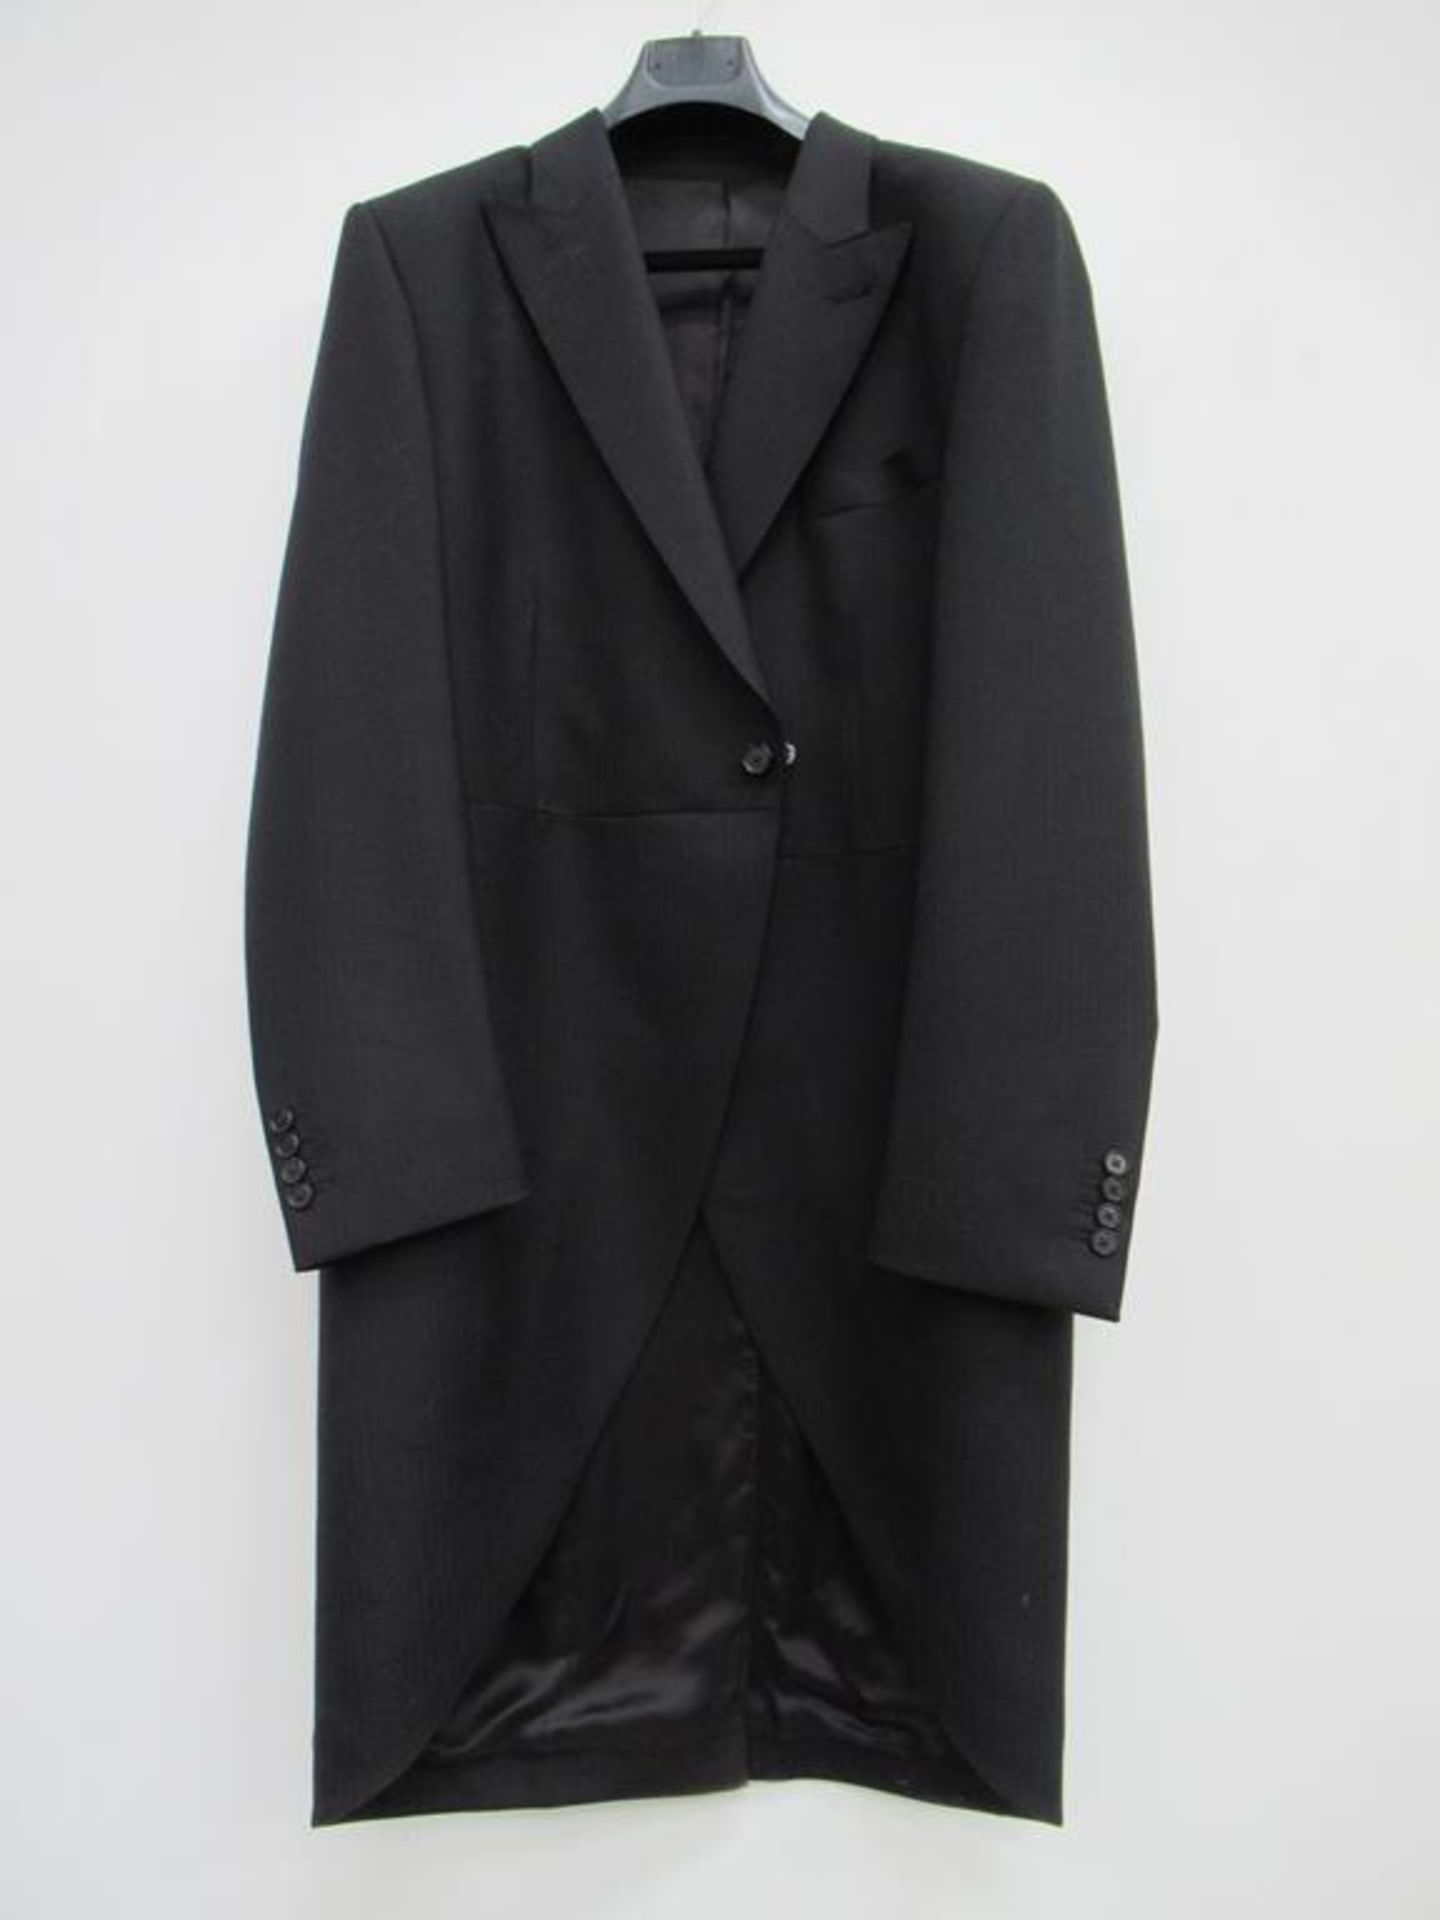 Fitzrovia morning coat and waistcoats